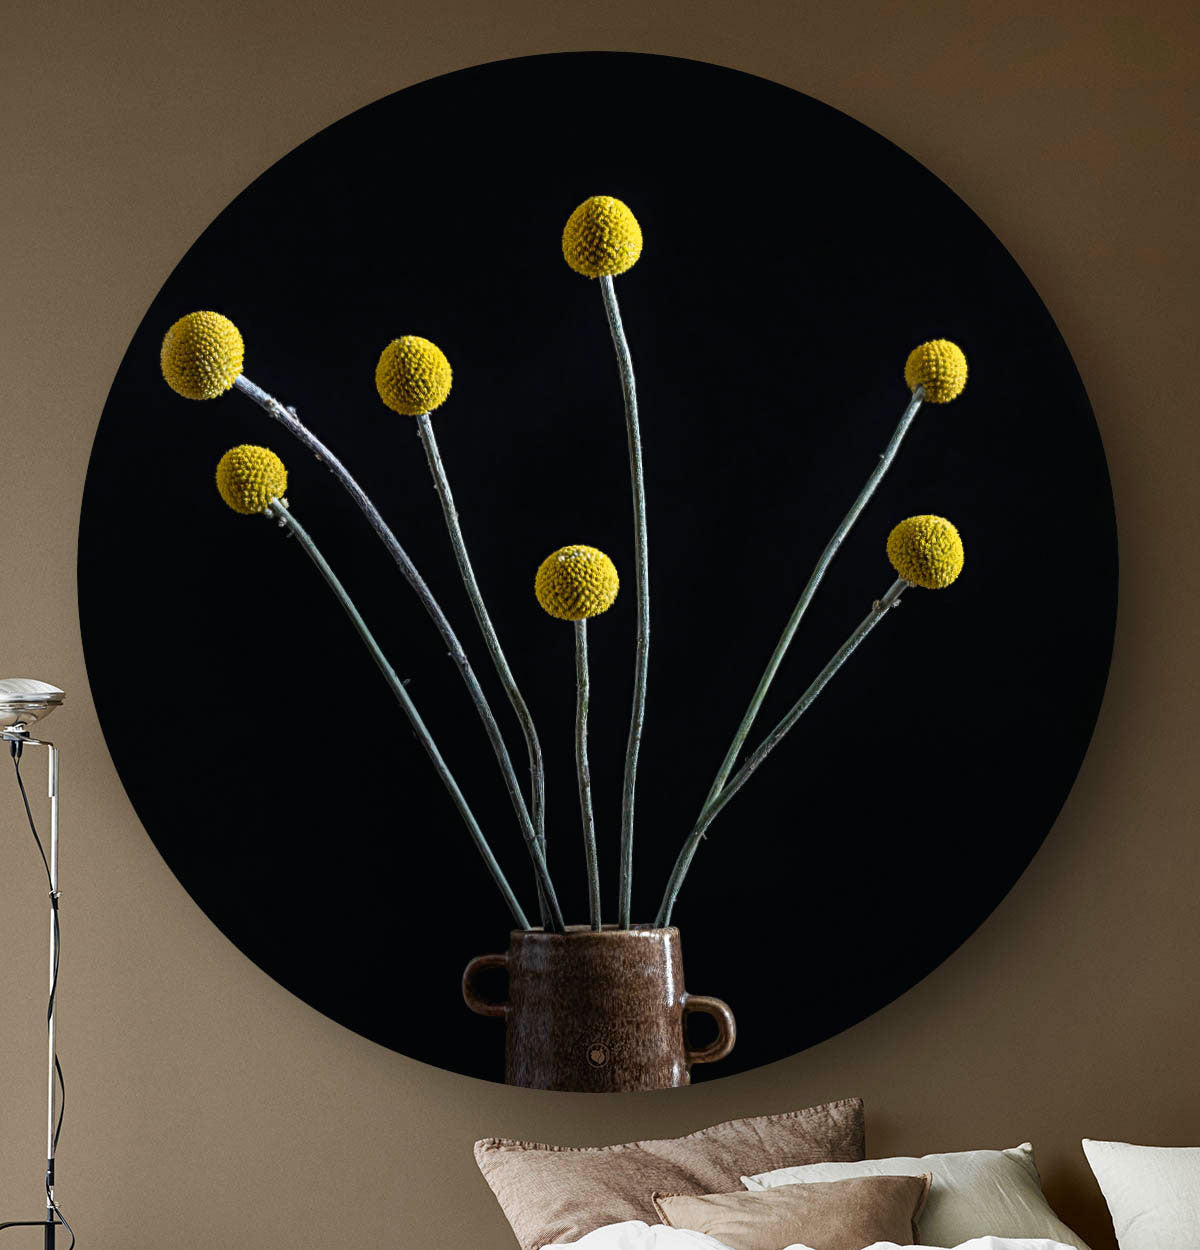 Muurcirkel met gele bol pluimen met een zwarte achtergrond tegen een beige muur